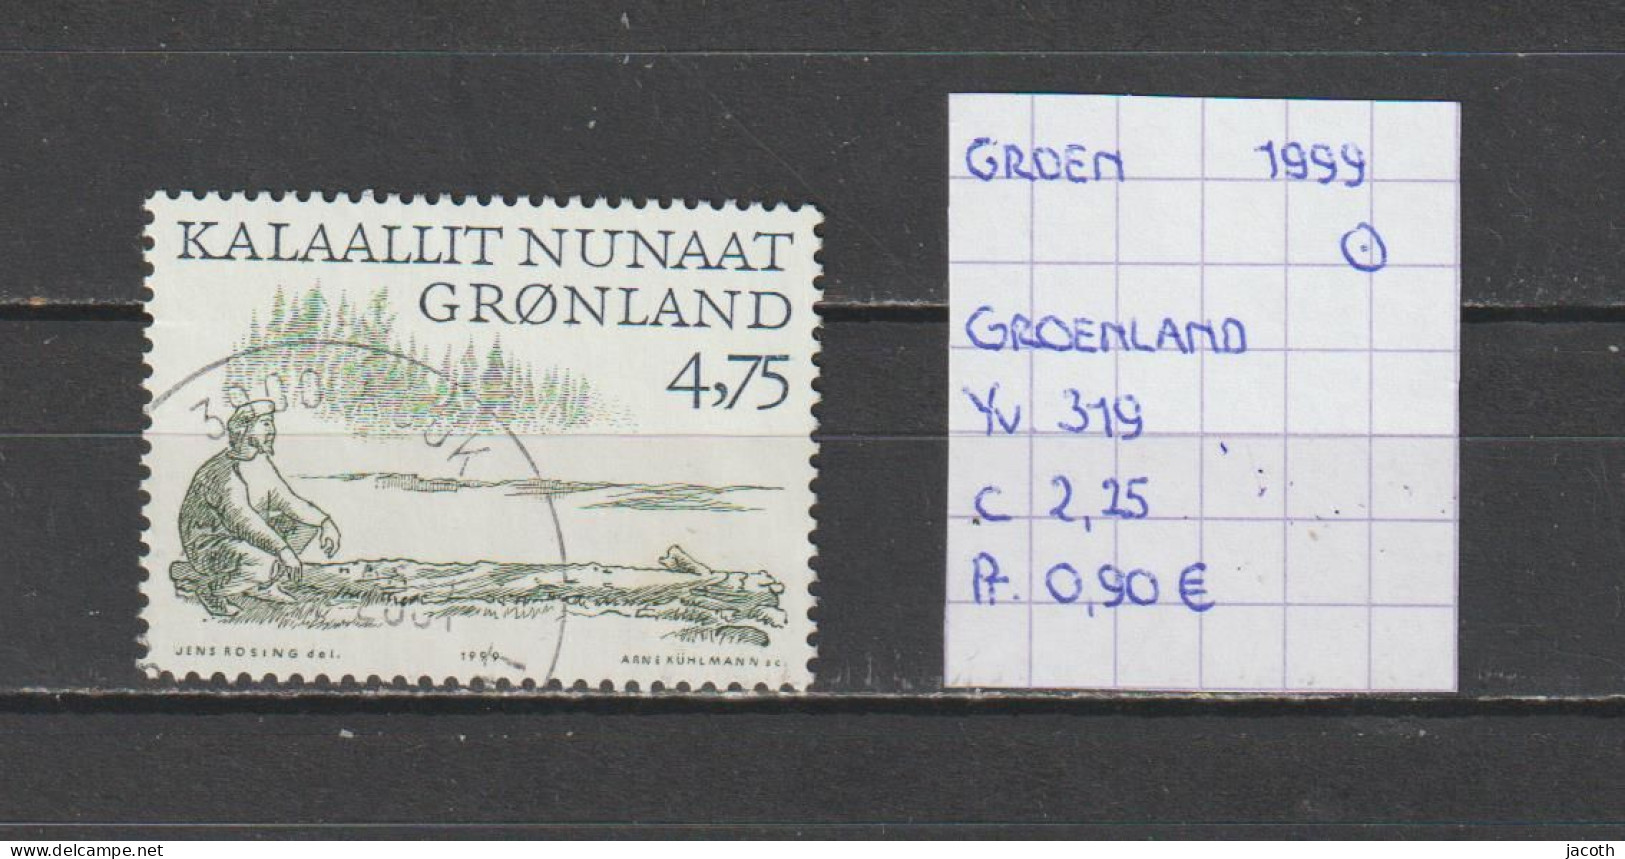 (TJ) Groenland 1999 - YT 319 (gest./obl./used) - Gebraucht